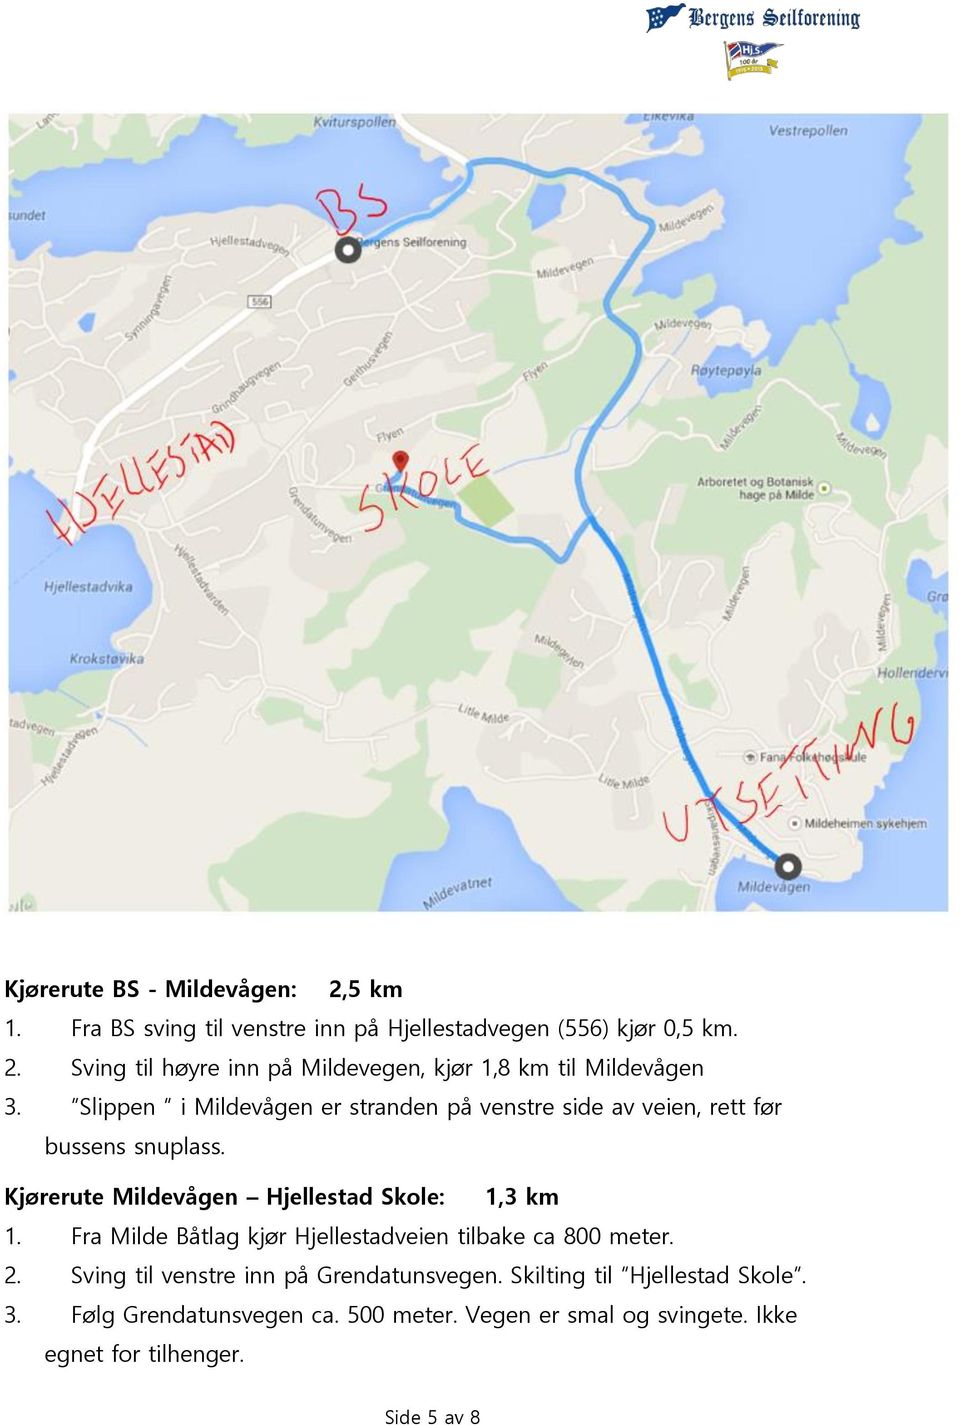 Fra Milde Båtlag kjør Hjellestadveien tilbake ca 800 meter. 2. Sving til venstre inn på Grendatunsvegen. Skilting til Hjellestad Skole.